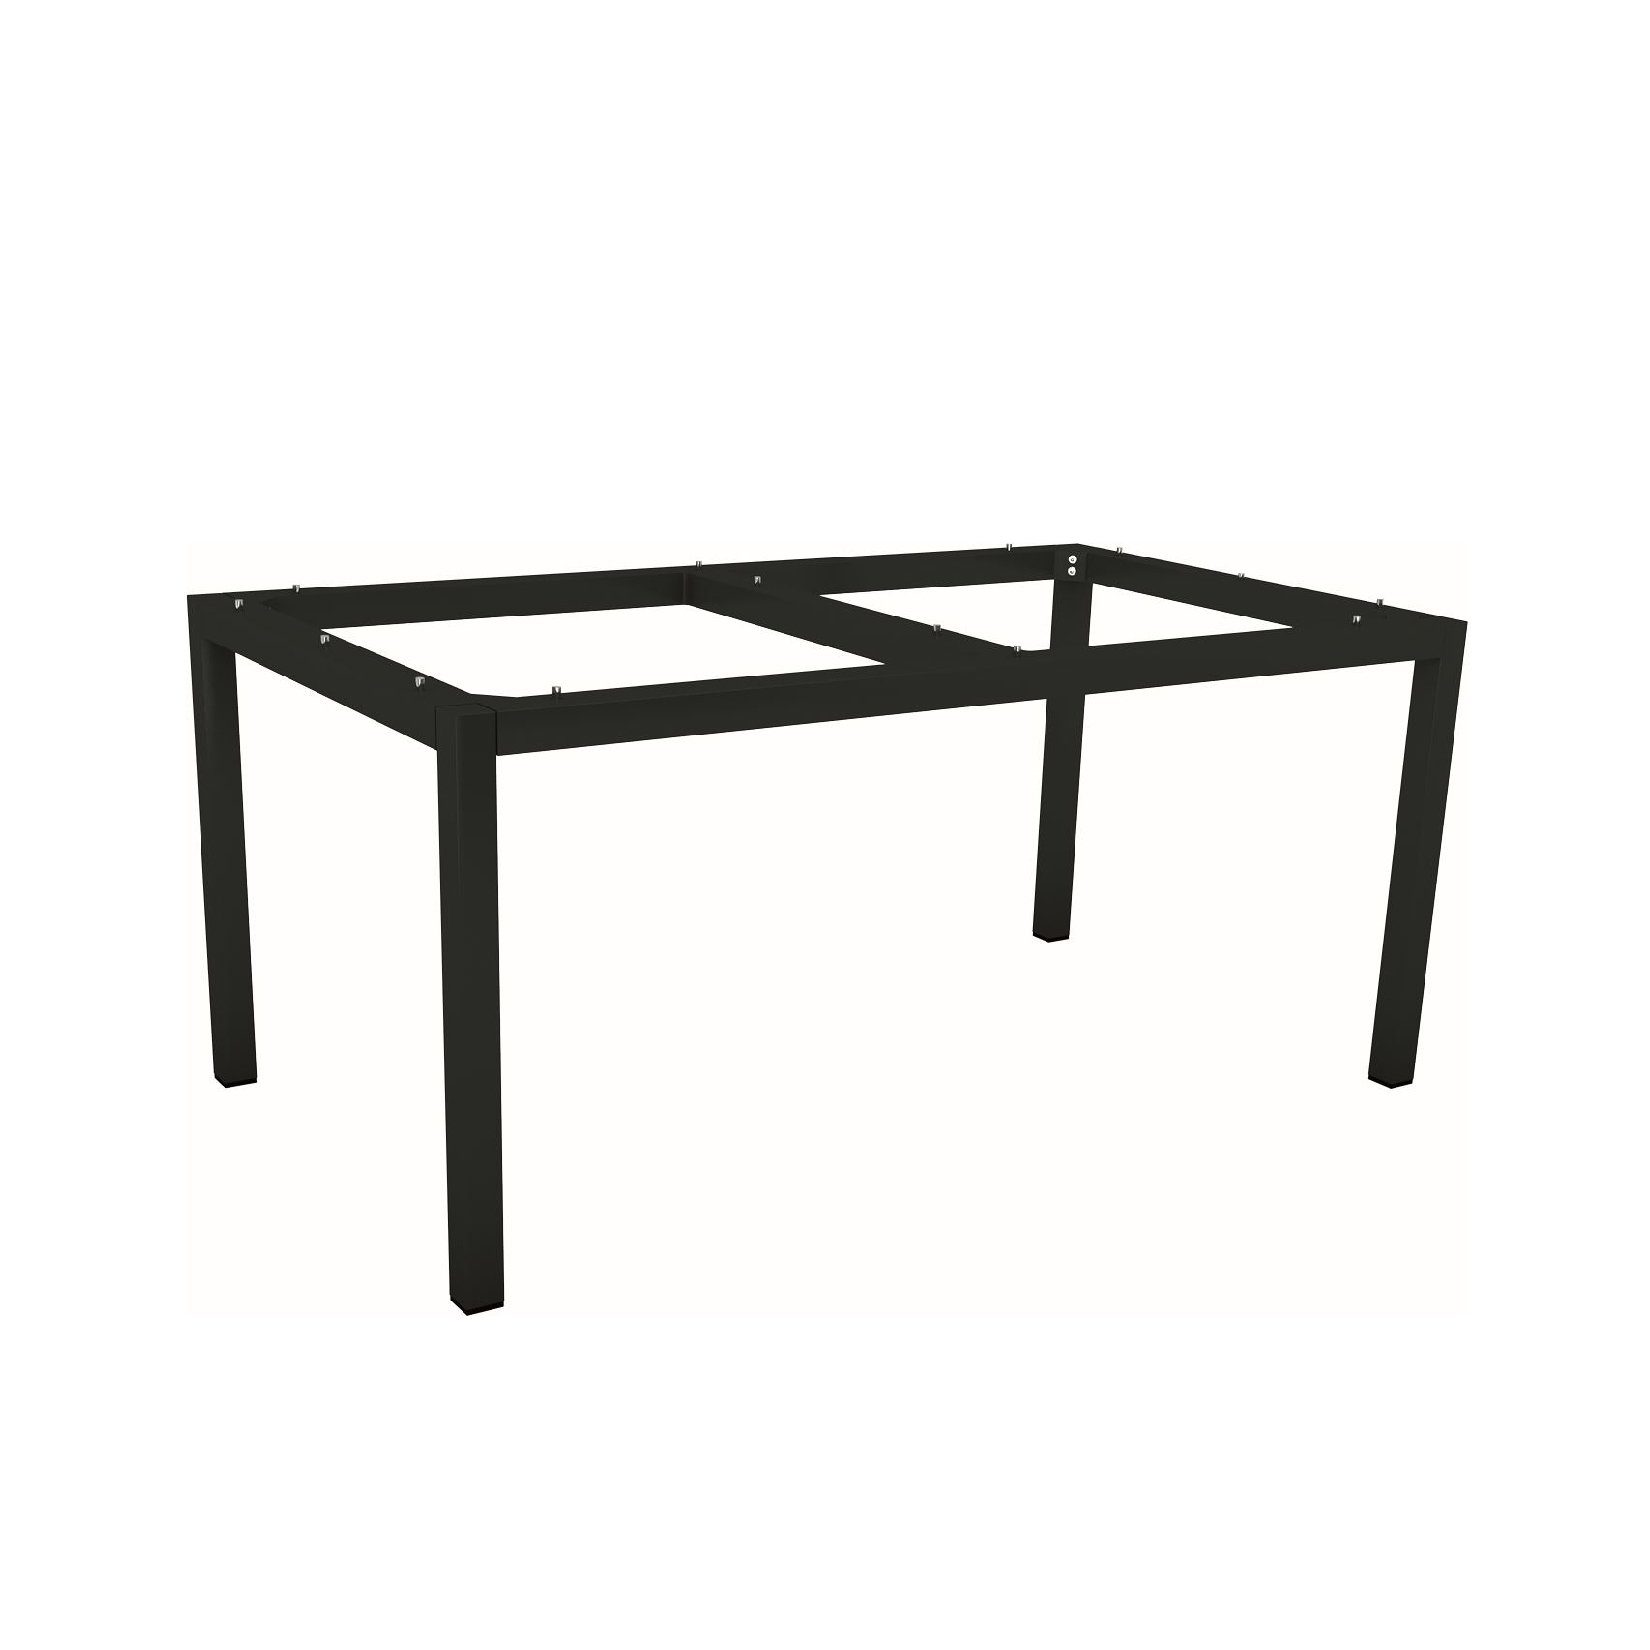 Stern Tischgestell Aluminium schwarz matt, 160x90 cm